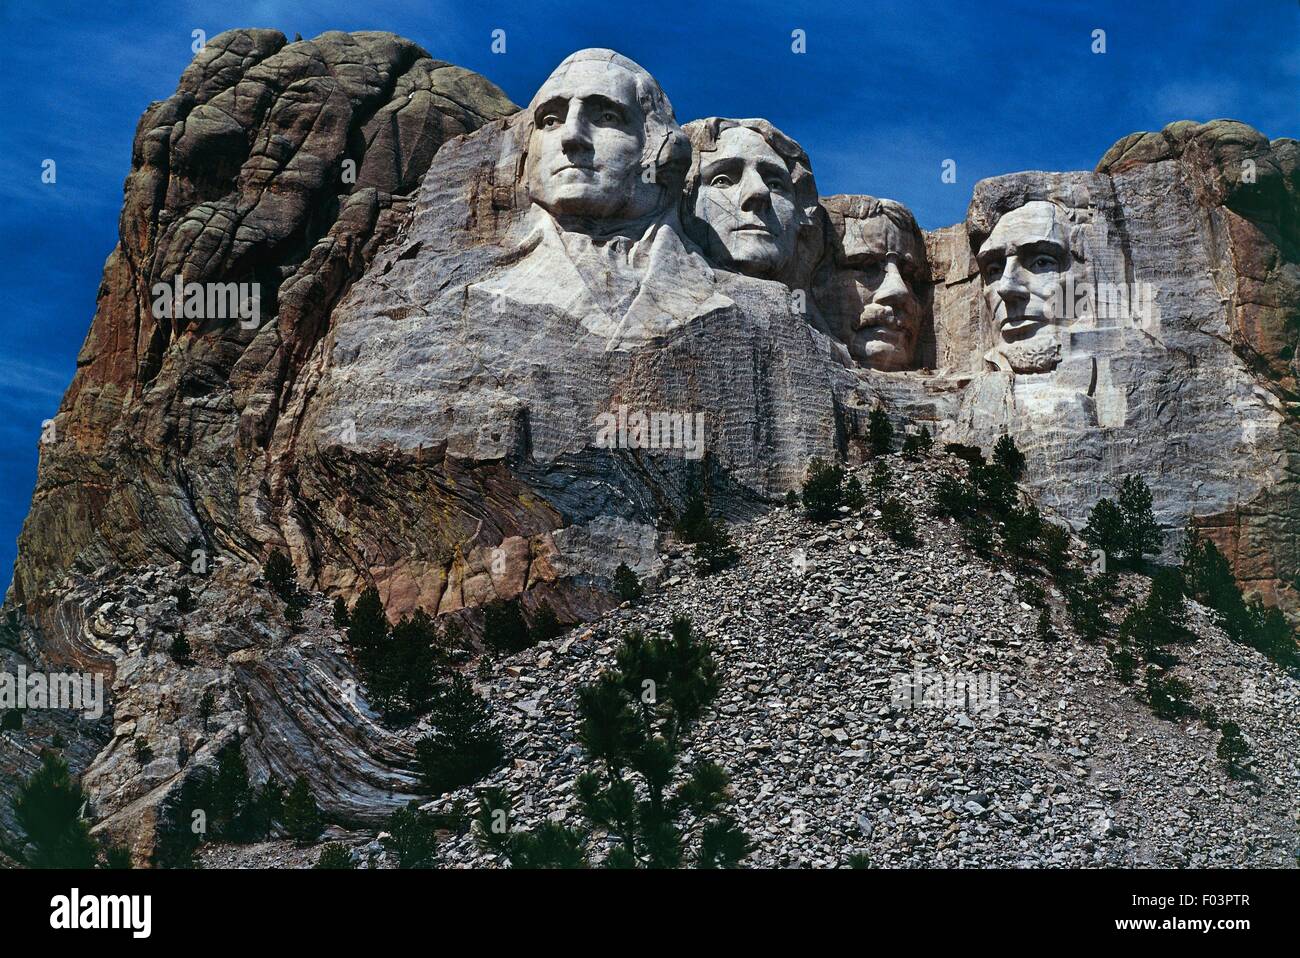 Les sculptures sculptées représentant les visages de présidents des États-Unis George Washington (1732-1799) et Thomas Jefferson (1743-1826), monument national, le Mont Rushmore, South Dakota, United States of America. Banque D'Images